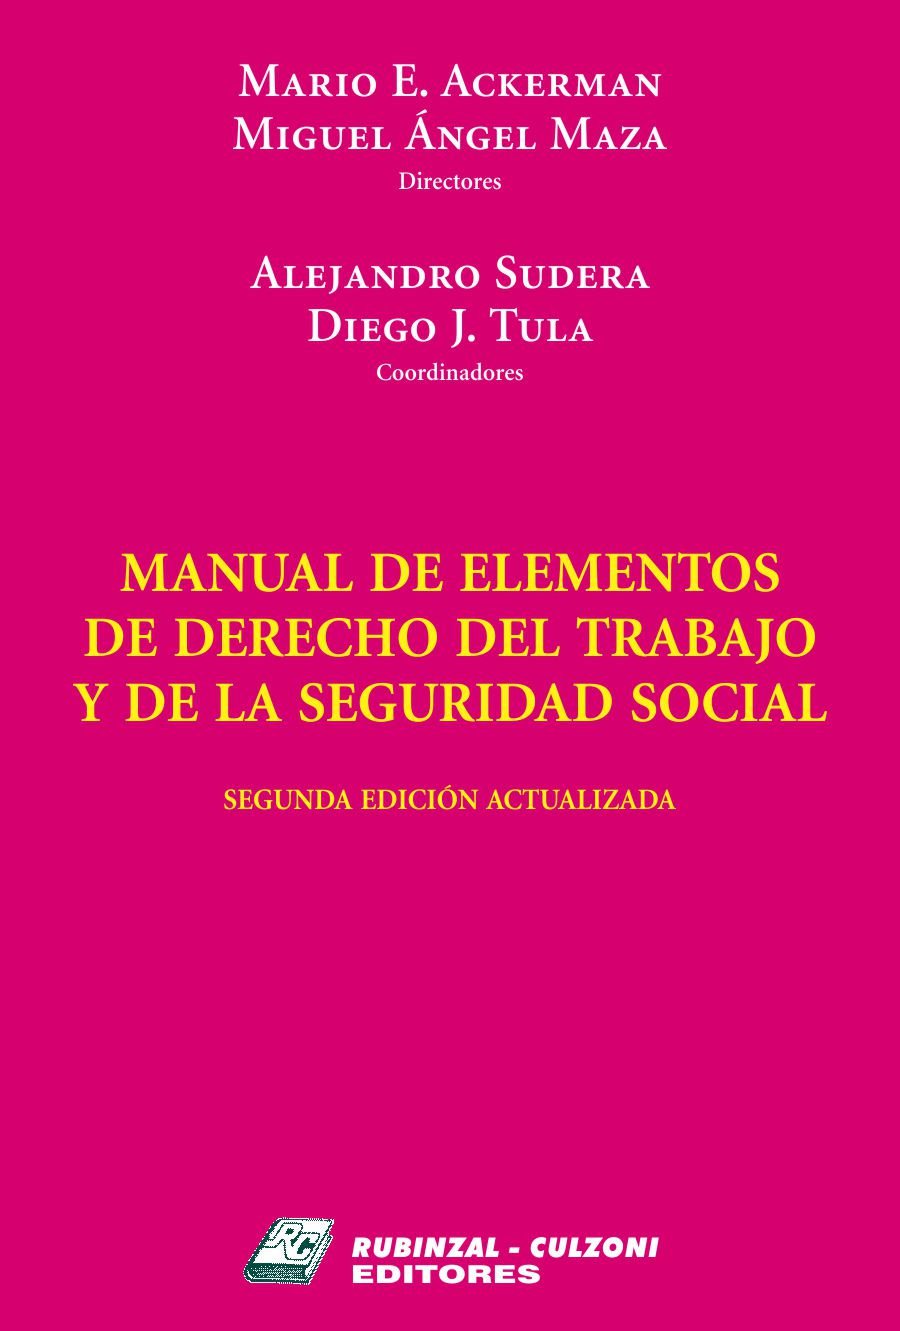 Manual de Elementos de Derecho del Trabajo y de la Seguridad Social - 2° Edición actualizada 